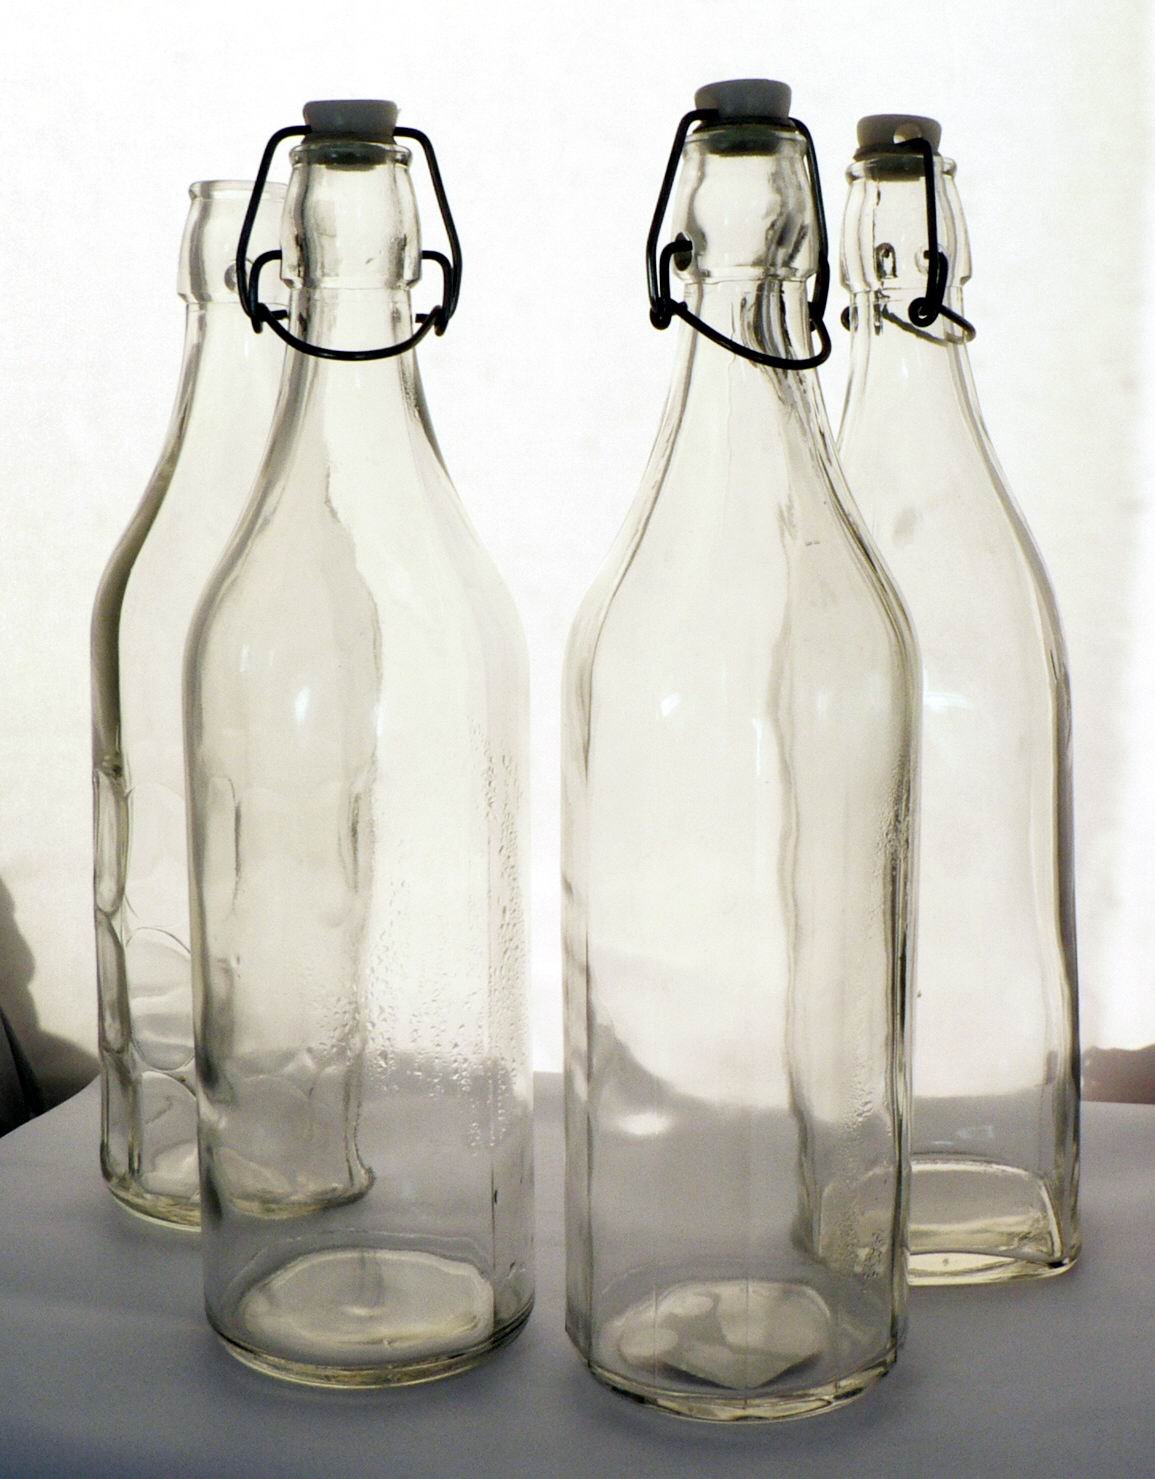 1000ml Swing Top Glass Bottle Buy Glass Bottle Water Bottle Glass